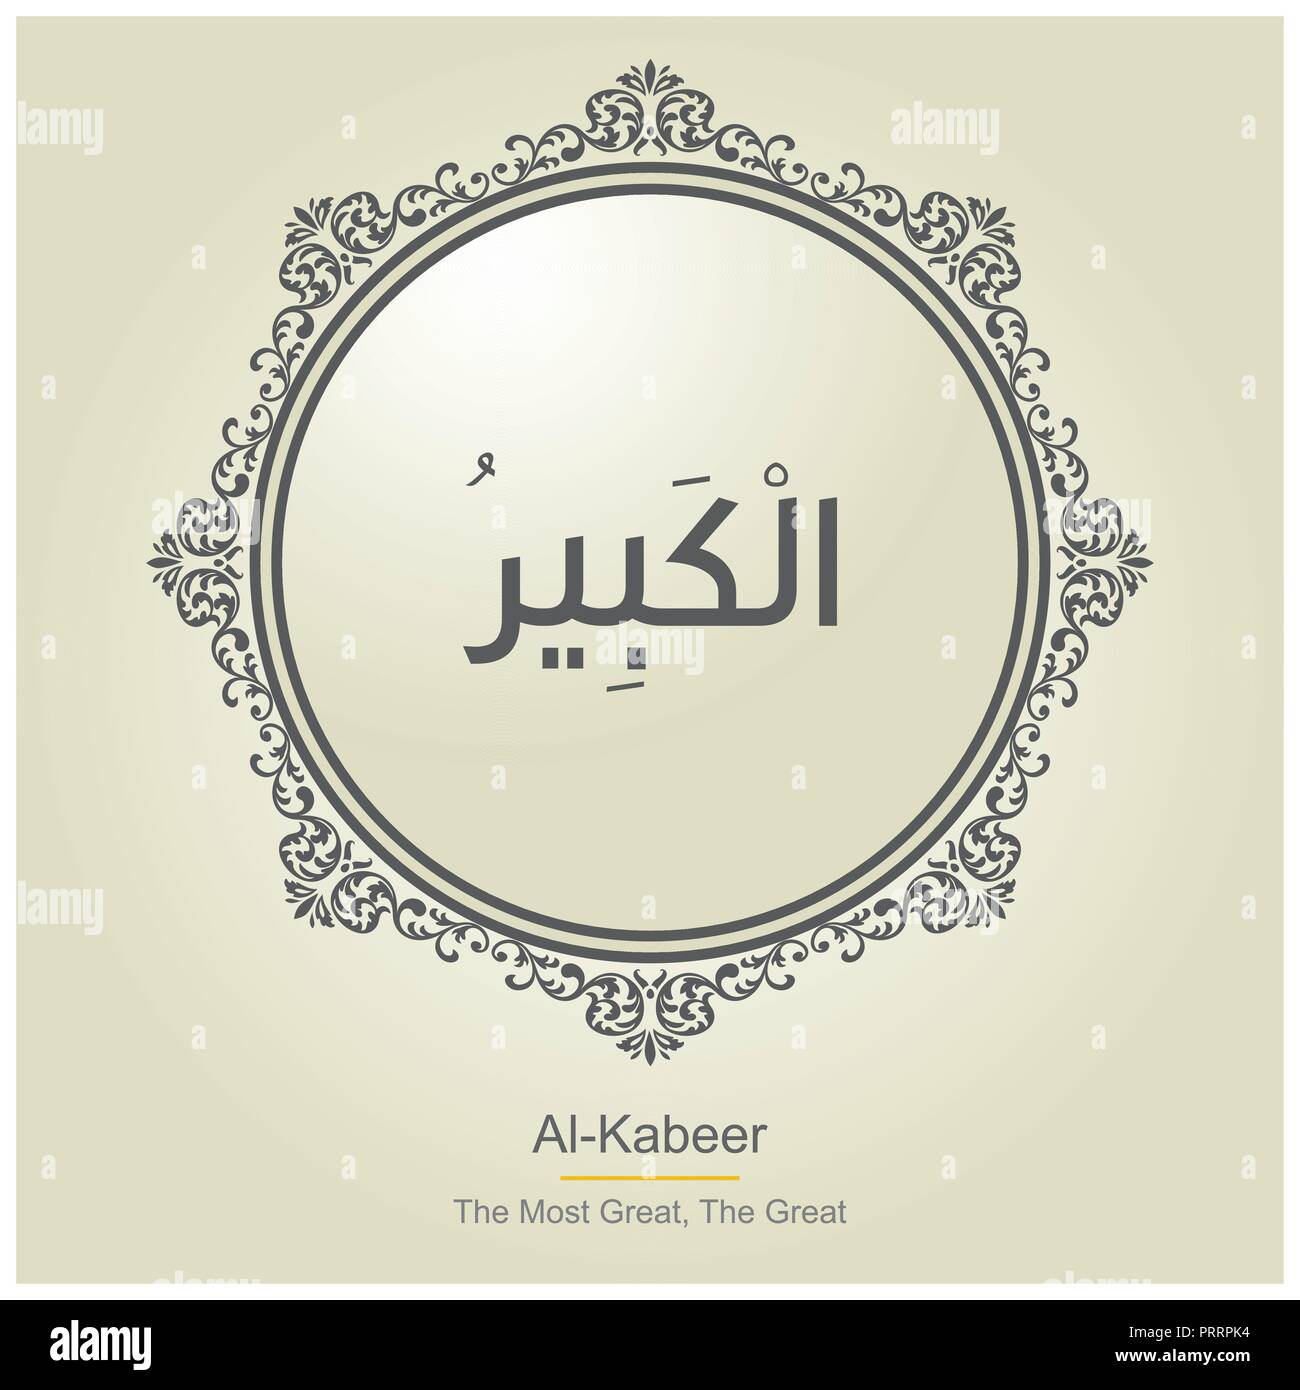 Allah Names typography designs vector Stock Vector